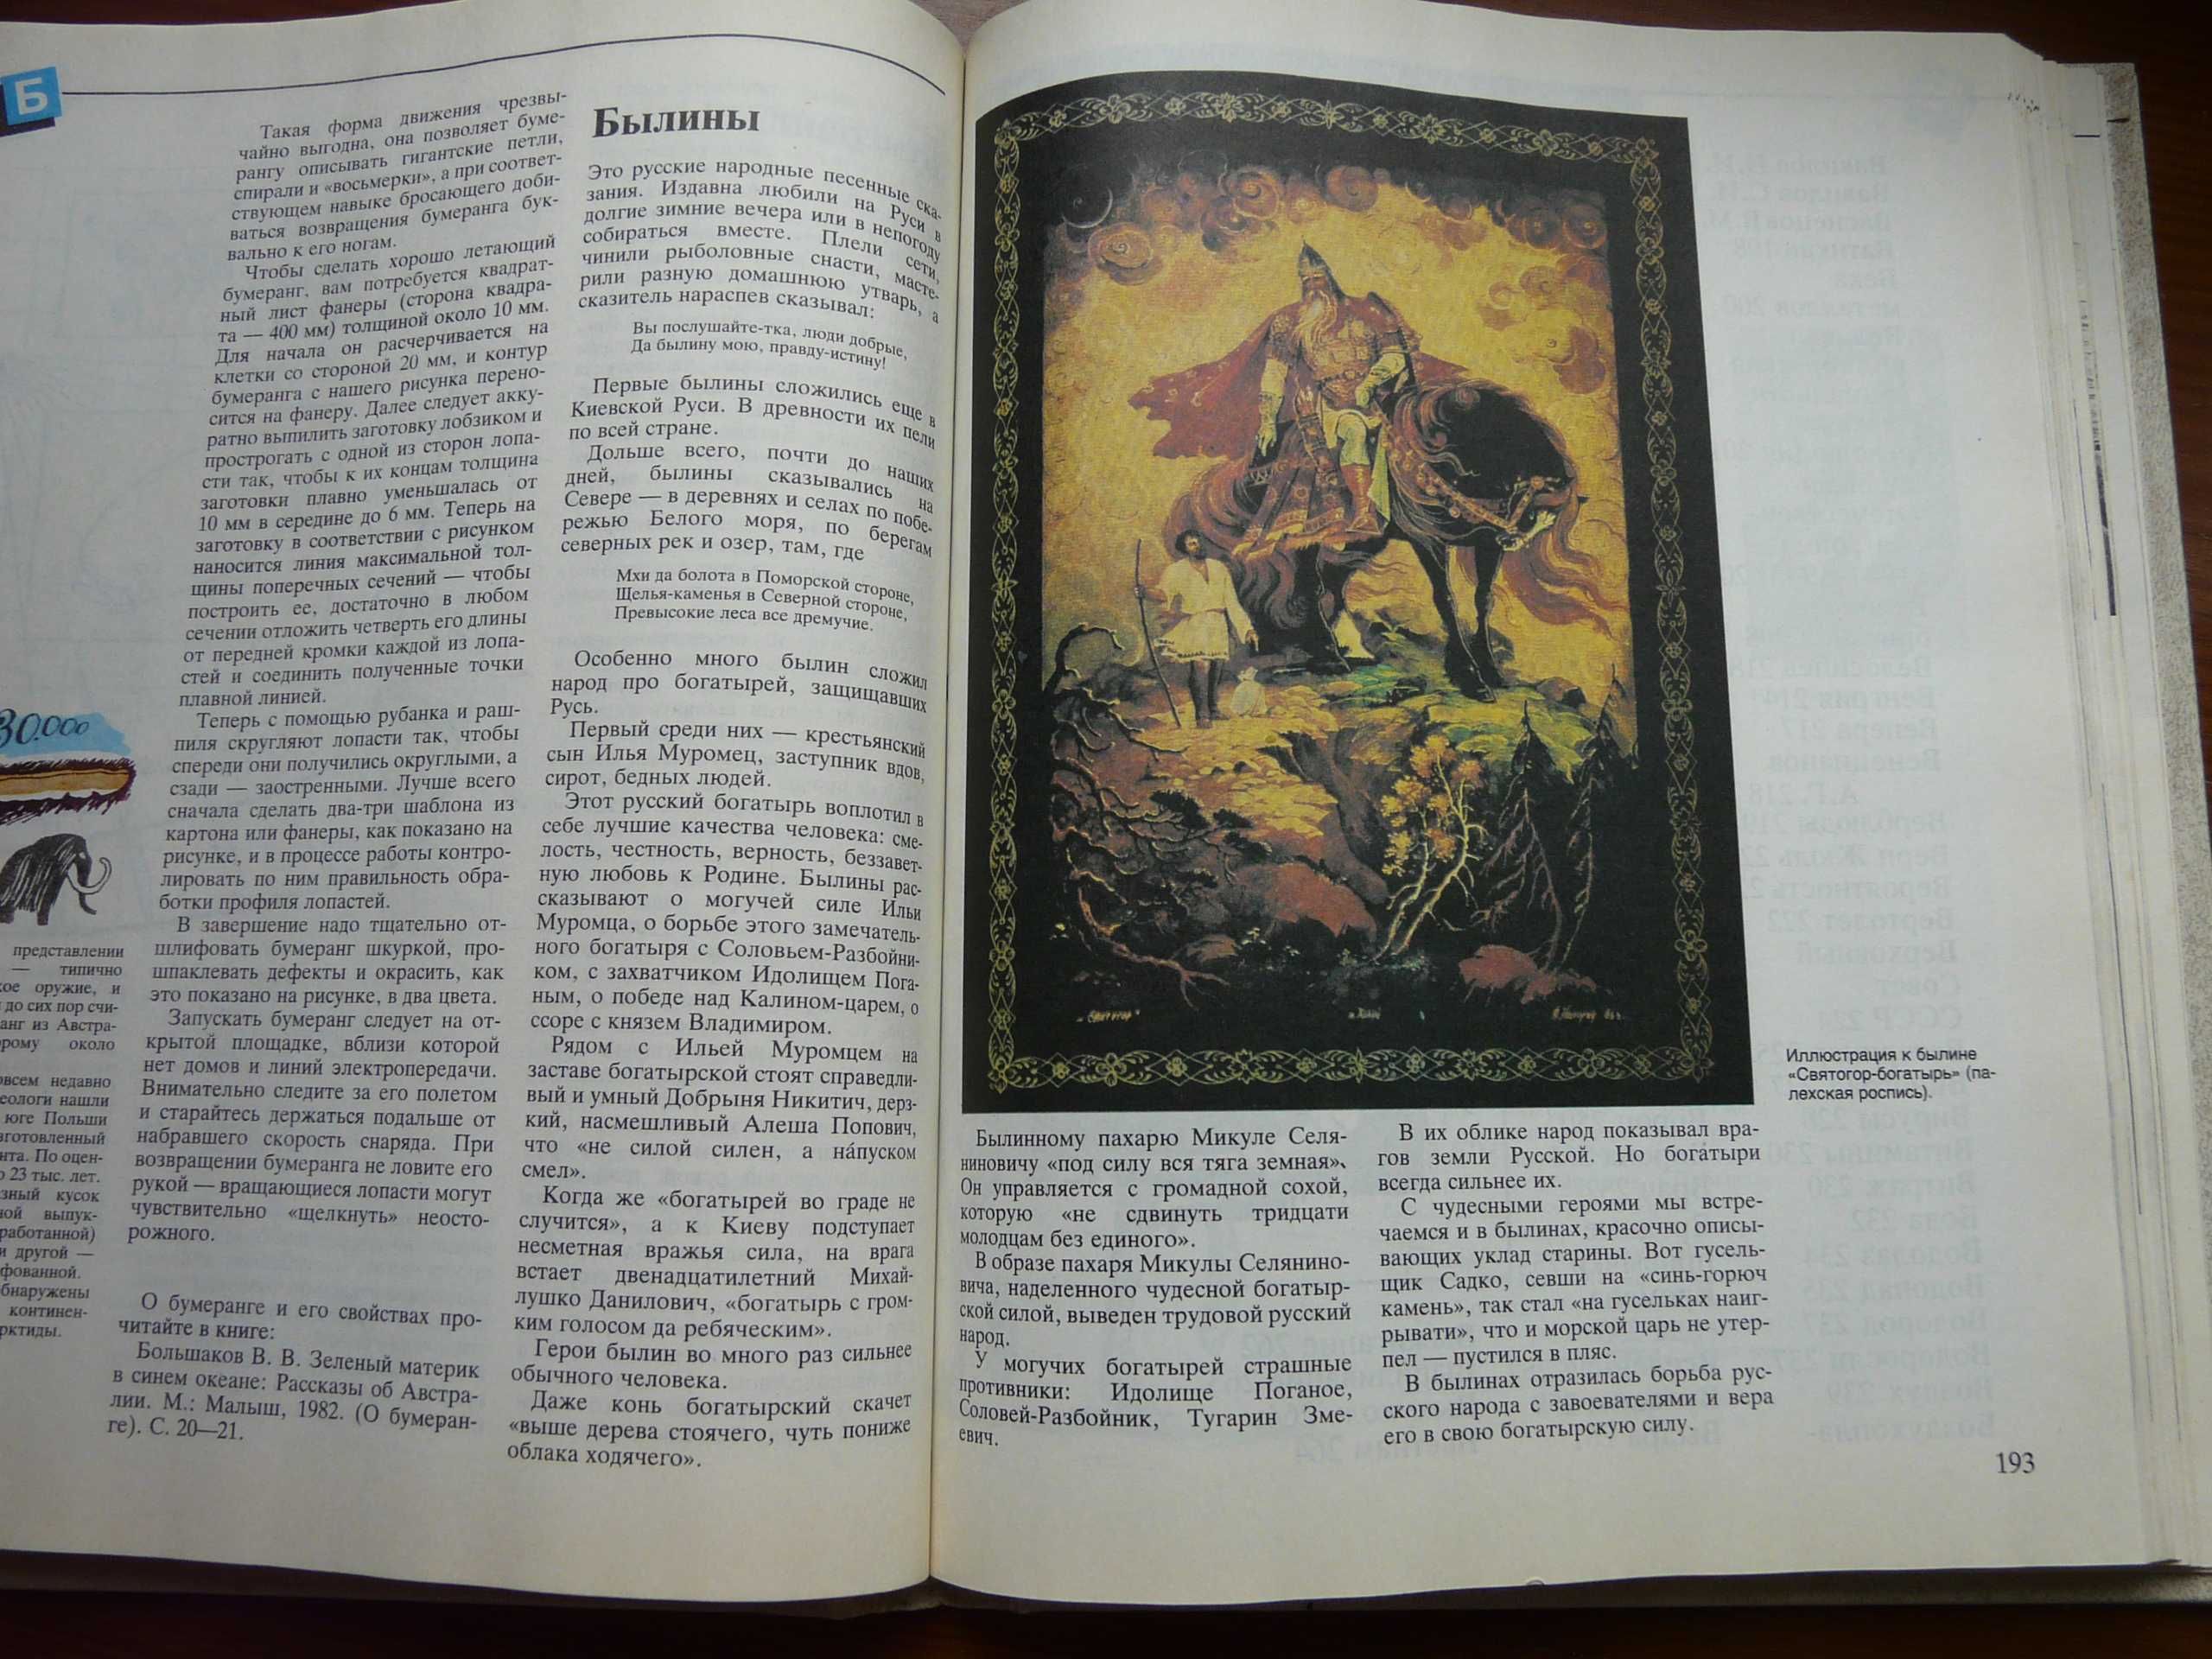 В Луганске продаю детскую энциклопедию "Что такое? Кто такой?" Том 1.